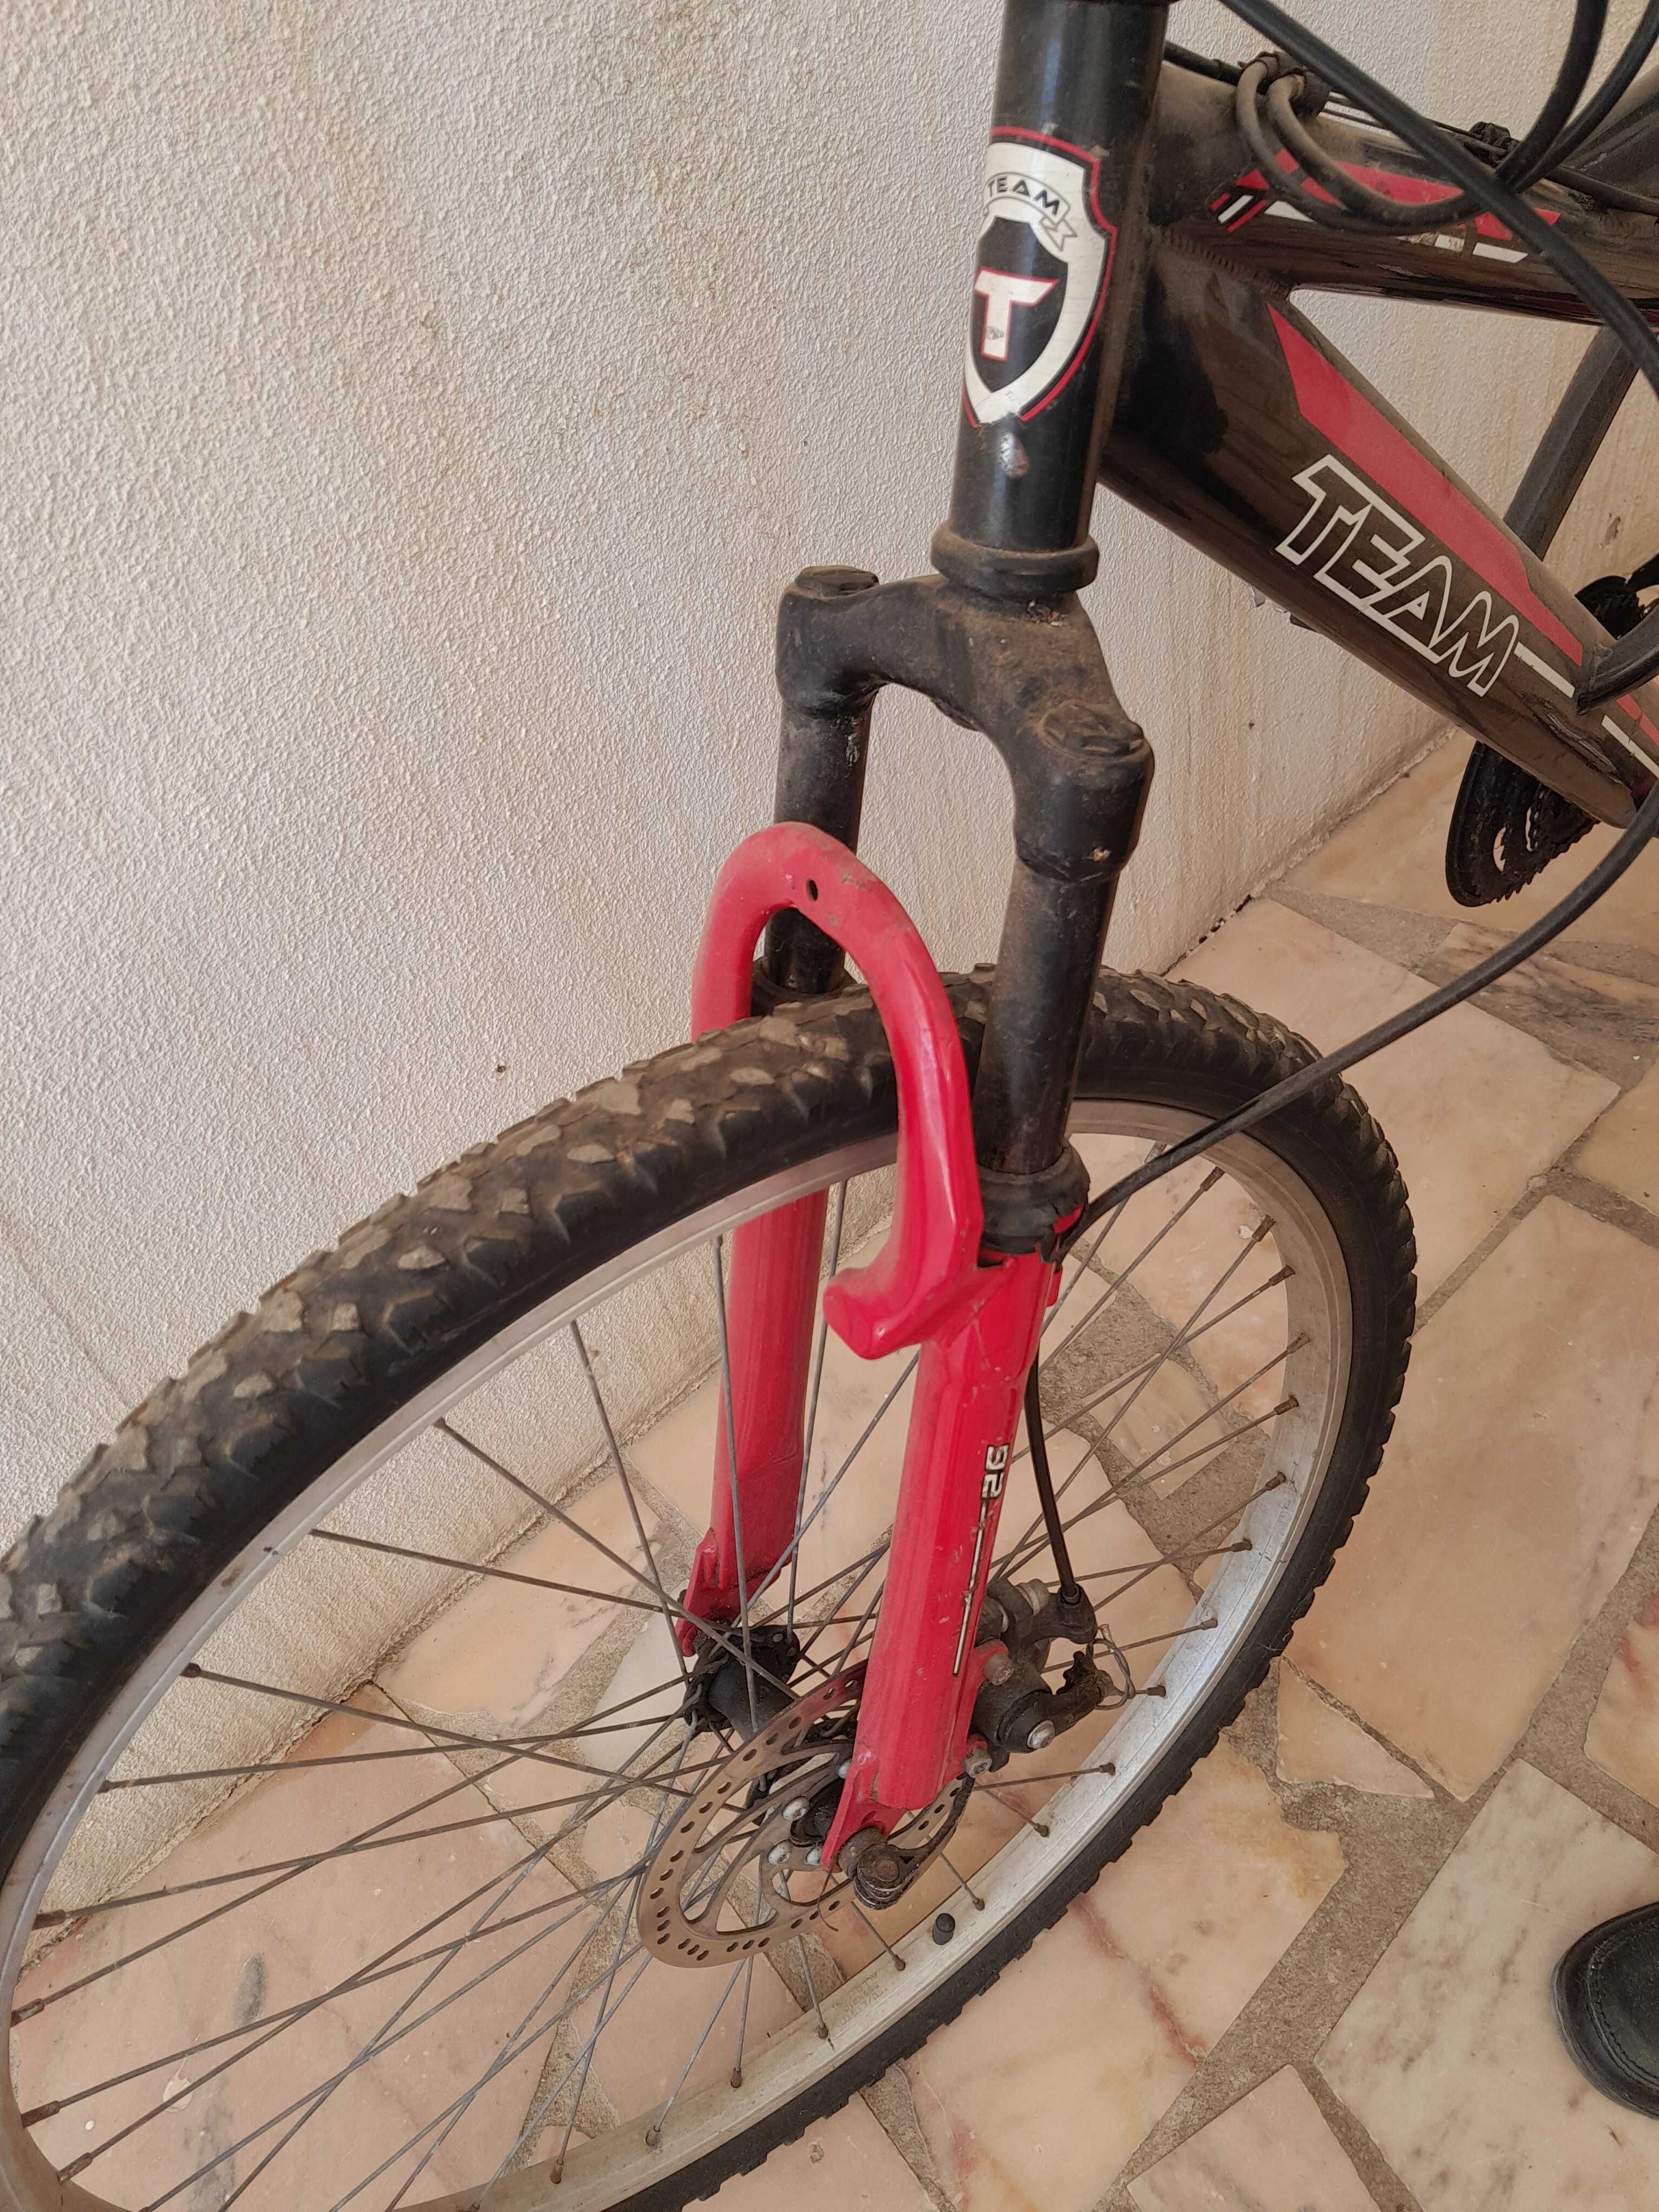 Bicicleta btt com amortecedores